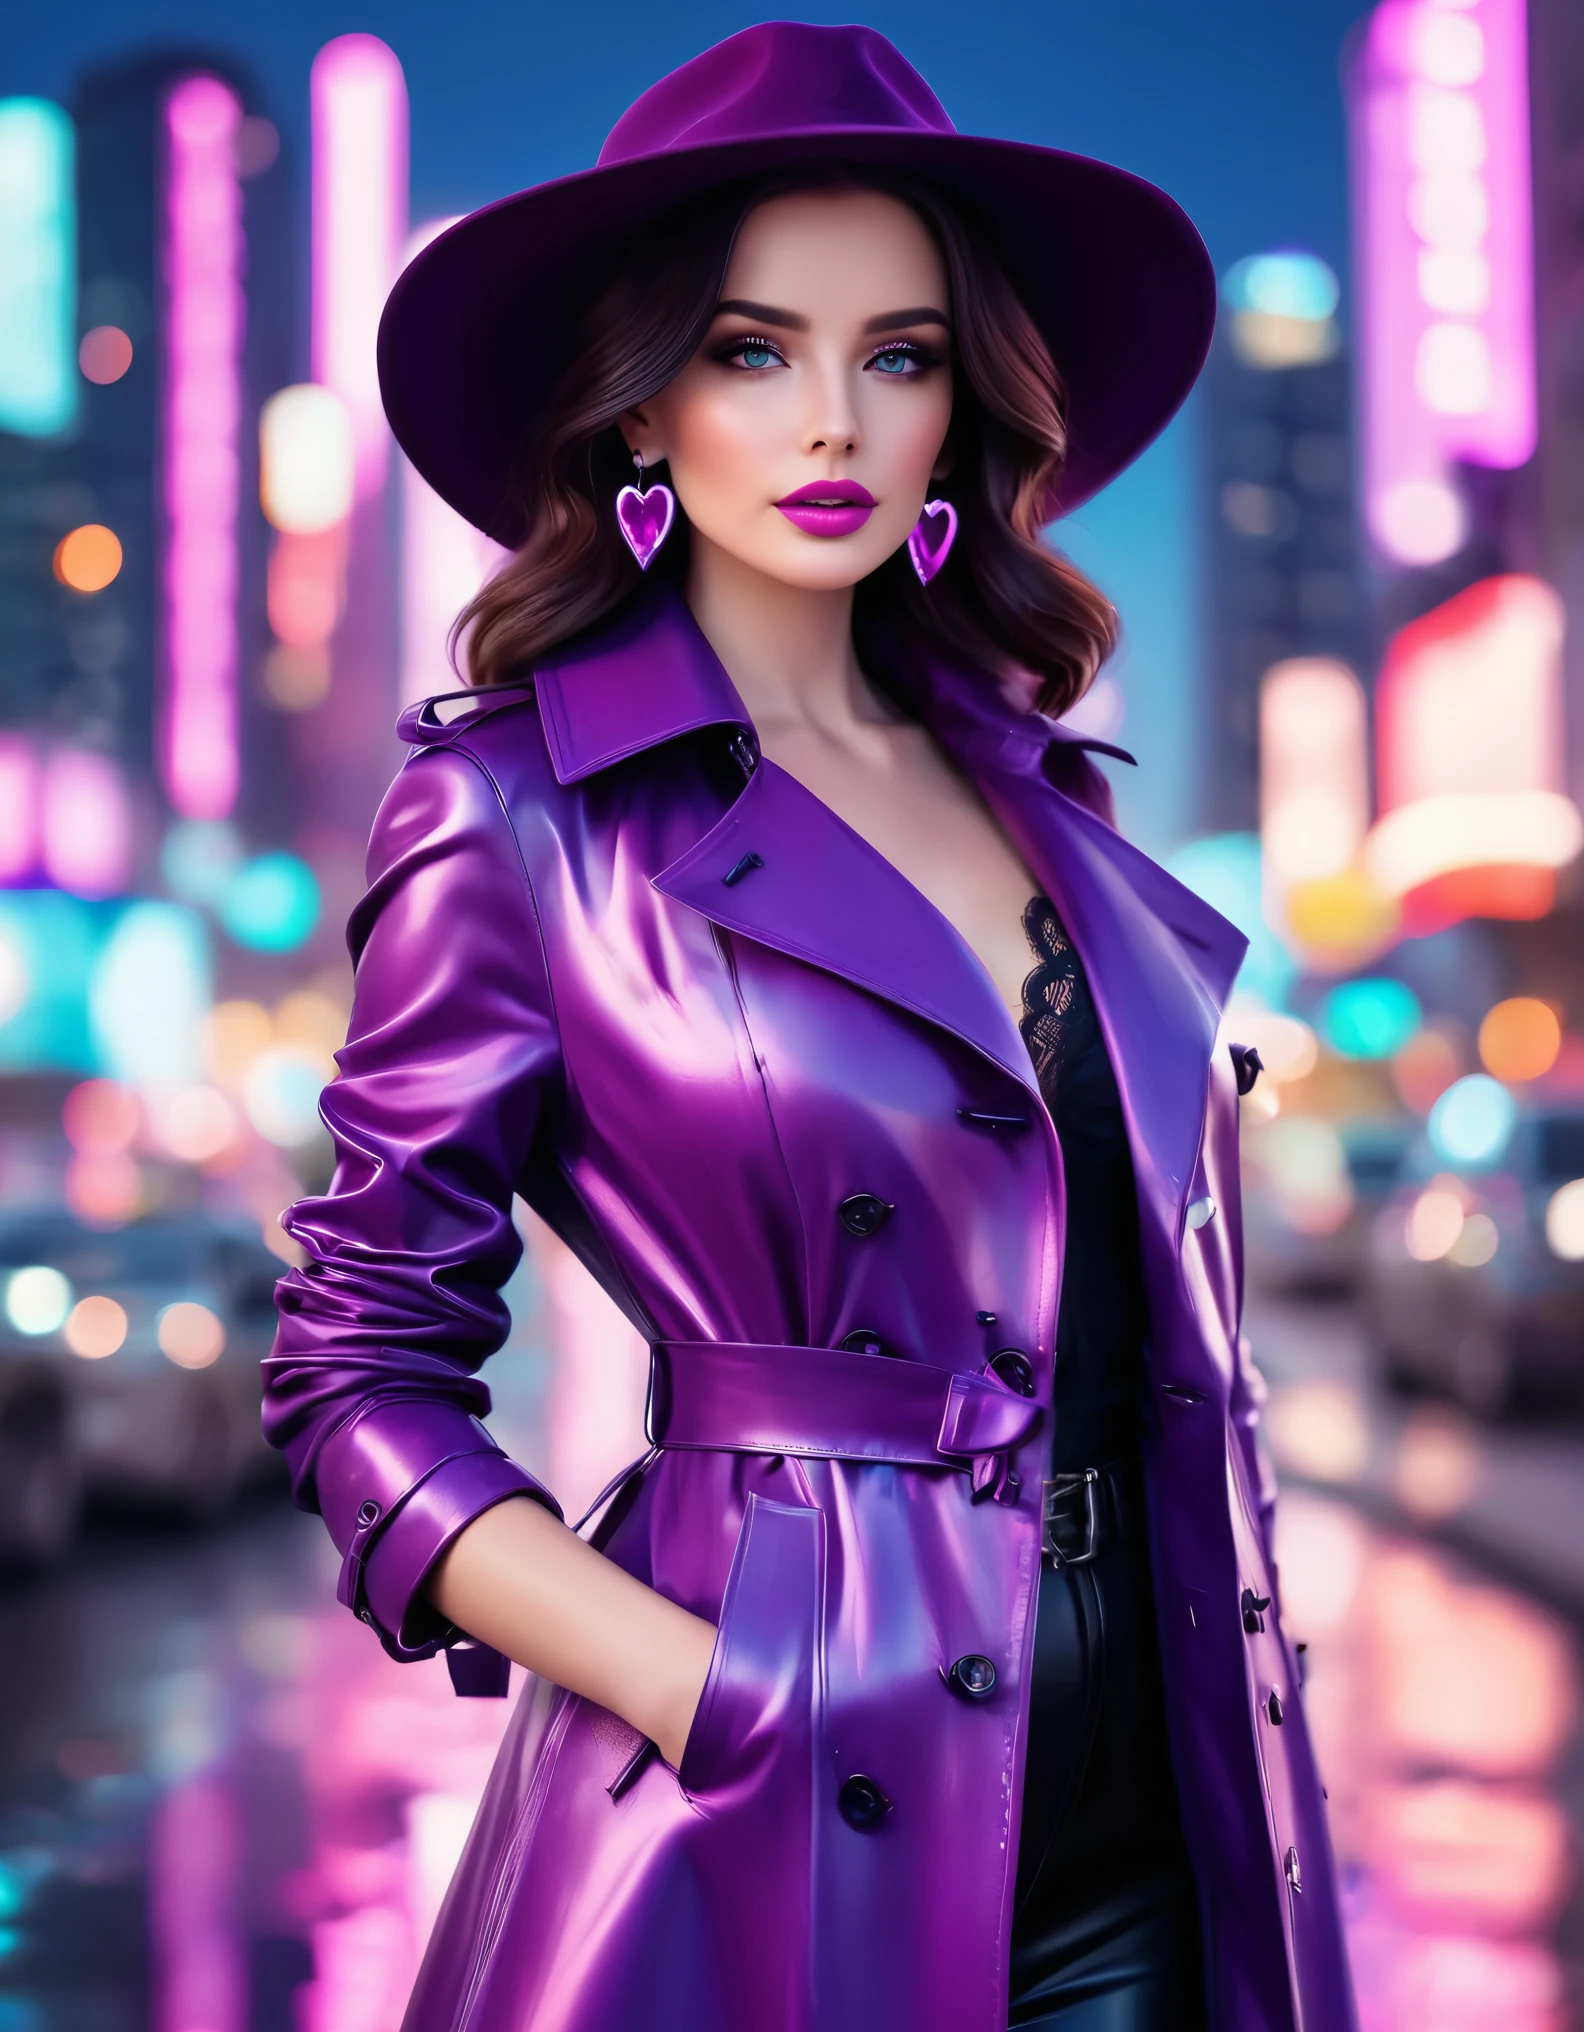 自信がありスタイリッシュな外見のエレガントな女性. 彼女は波状です, 肩までの長さの紫色のハイライトが入った黒髪, リボンで飾られた鮮やかなピンクのつば広の帽子をかぶっています. 彼女の化粧は完璧です, 大胆なアイメイクとピンクの口紅で. 彼女はおしゃれな服を着ている, 光沢のある紫色のトレンチコートに黒のレースのコルセットトップを着る. 彼女のアクセサリーには、大きなハート型のイヤリングと、それにマッチした青い宝石が付いたハート型のペンダントネックレスがあります。. 背景は活気あふれる夜の街並み, ネオンライトに照らされた高層ビルと深い青色の, 星空. 空気中には柔らかく光る粒子がある, シーンの魔法と未来的な雰囲気をさらに高める. 超リアルな写真, 16K, 鮮やかな色彩